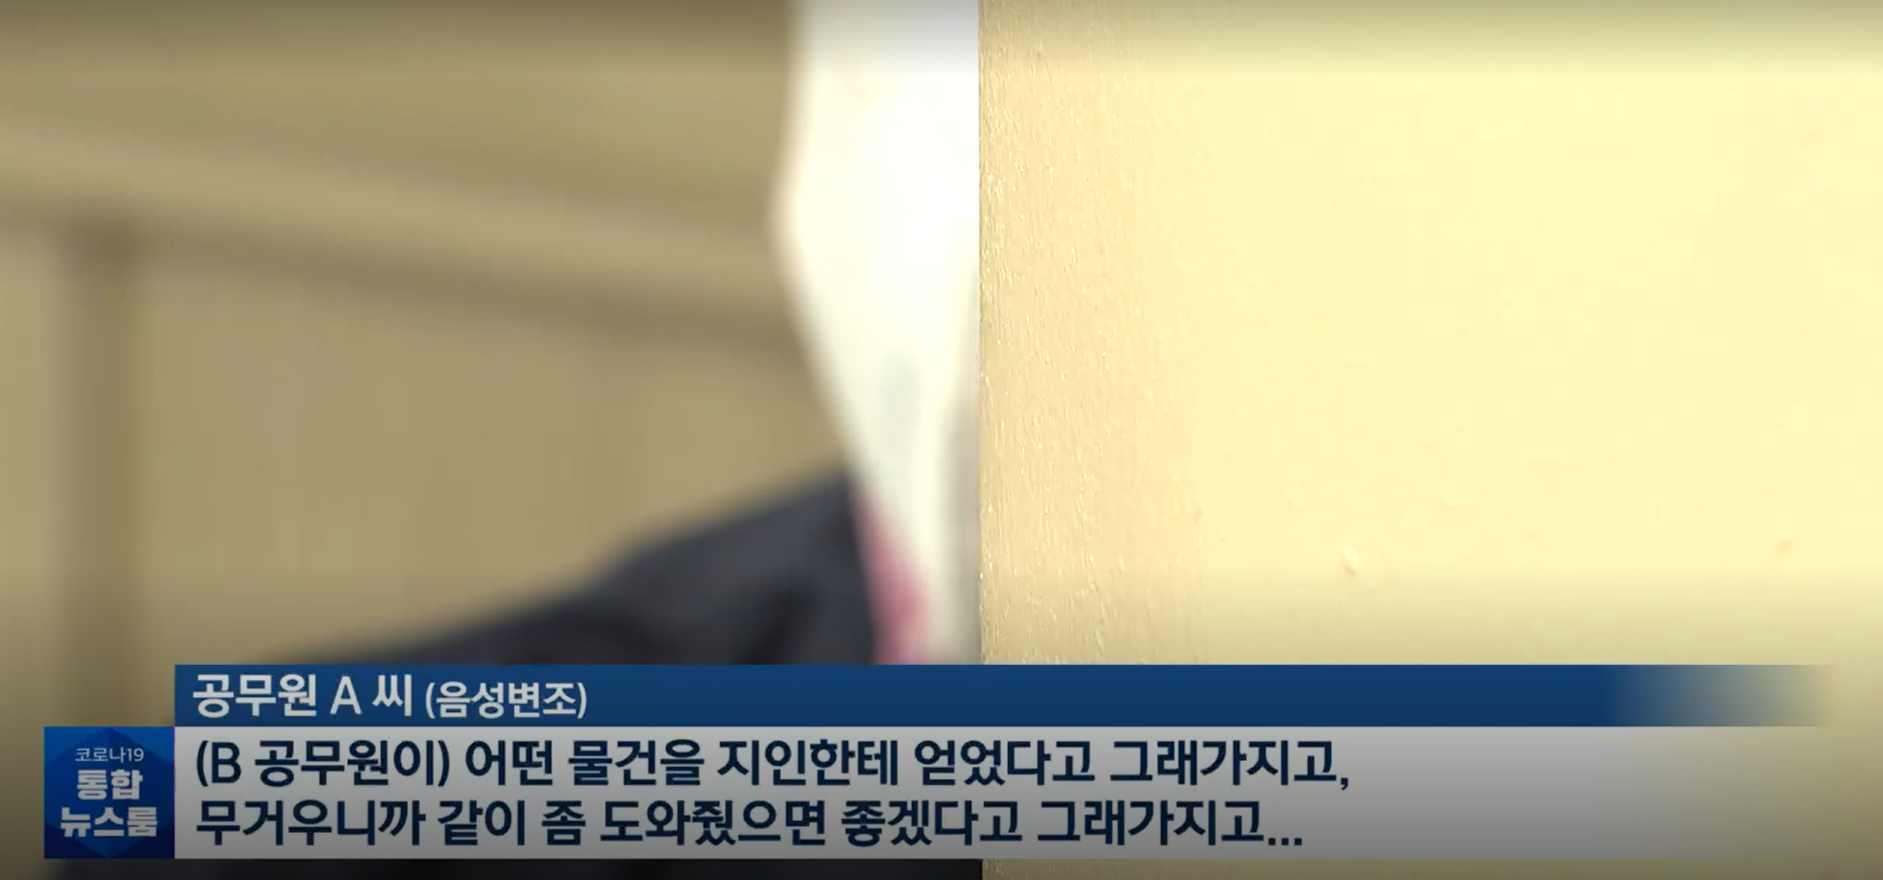 (7일 KBS 뉴스 7시 평일 대낮 공중화장실서 사라진 에어컨…공무원 소행?)